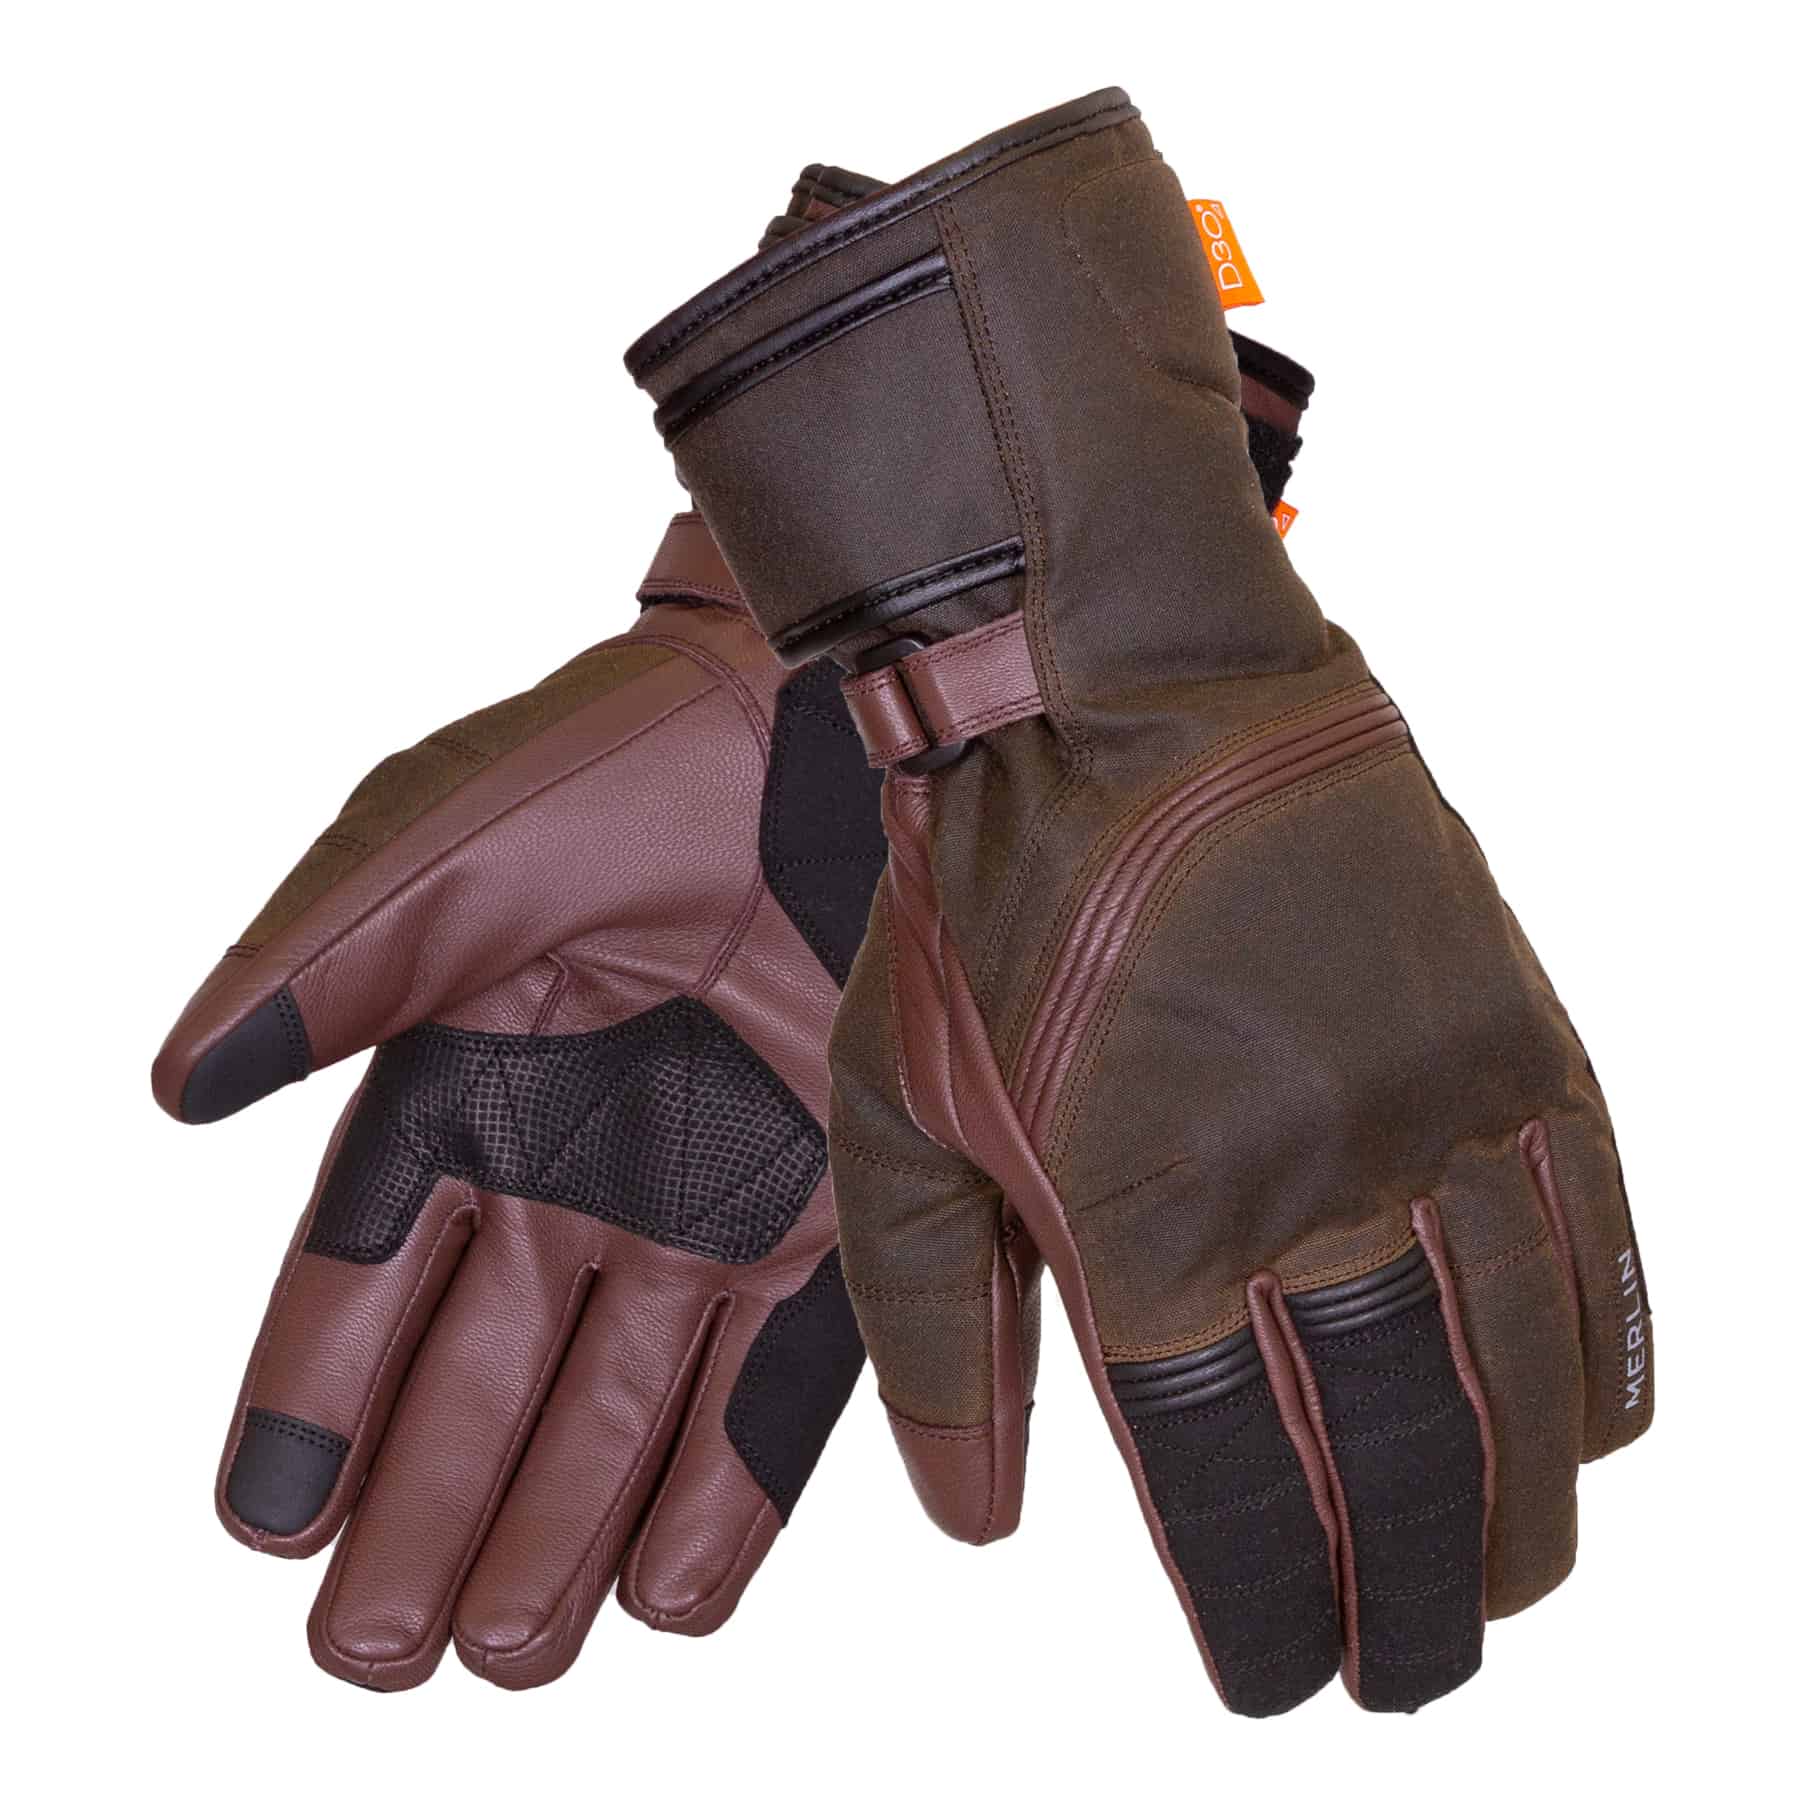 Ranger Olive D3O Glove Pair